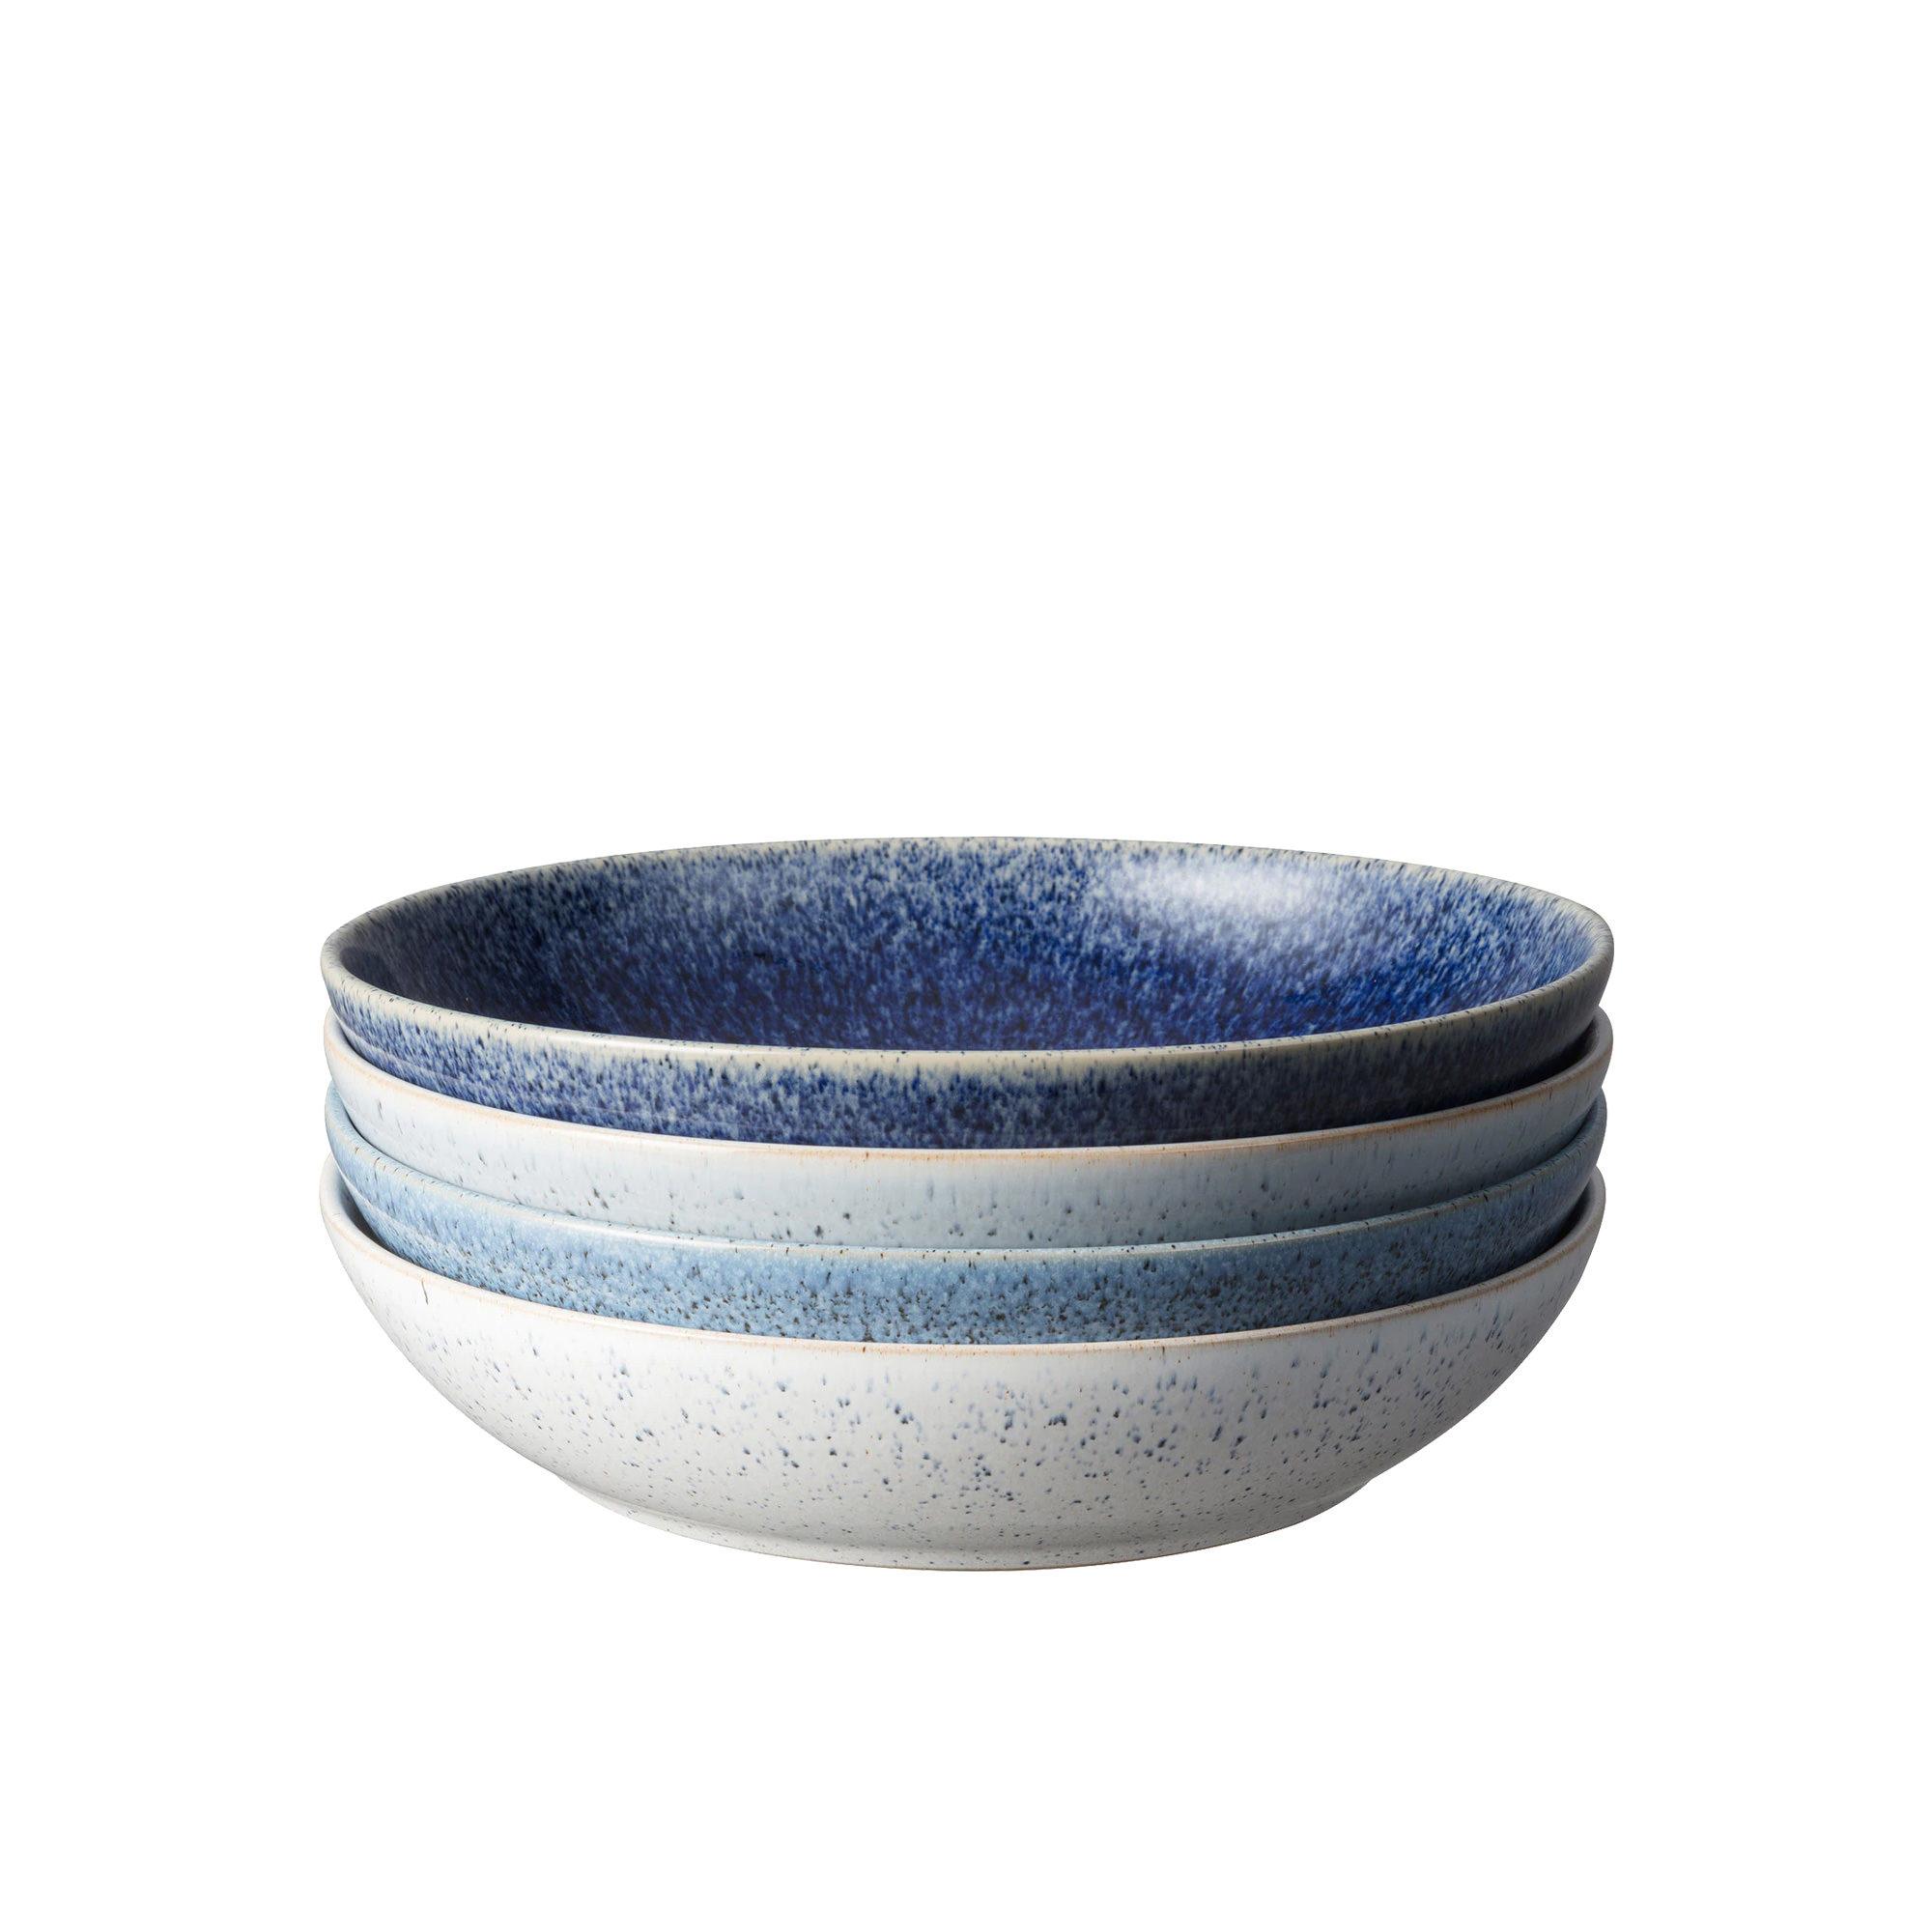 Denby Studio Blue Pasta Bowl Set of 4 Image 1